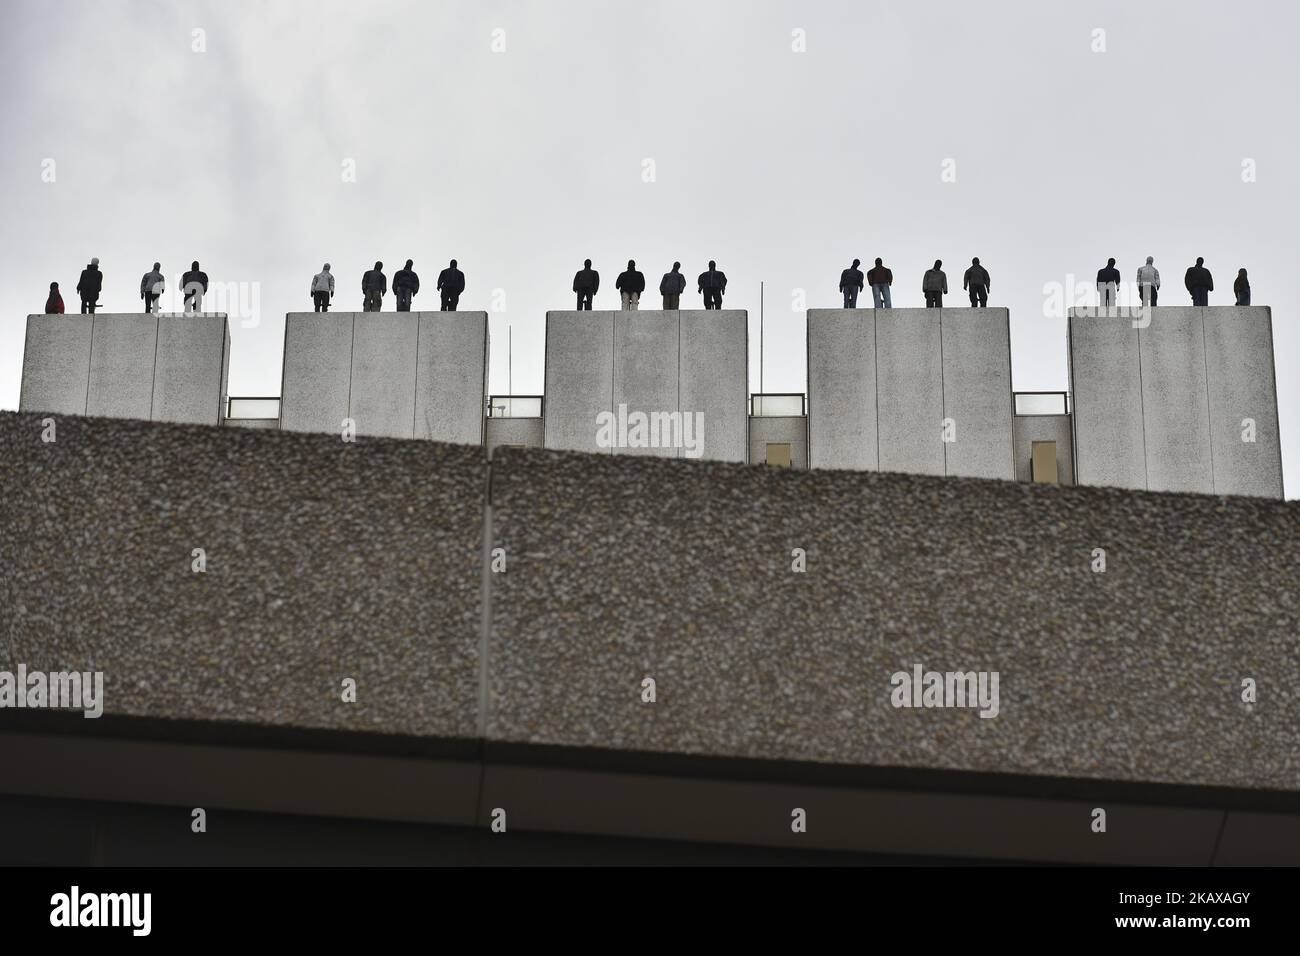 Lebensgroße Skulpturen von 84 Männern sind abgebildet, wie sie am 27. März 2018 auf dem Dach des ITV Television Centre in London aufgestellt wurden. Die 84 Skulpturen des Bildhauers Mark Jenkins auf einem zentralen Londoner Gebäude stellen die Anzahl der Männer dar, die sich jede Woche das Leben nehmen. (Foto von Alberto Pezzali/NurPhoto) Stockfoto